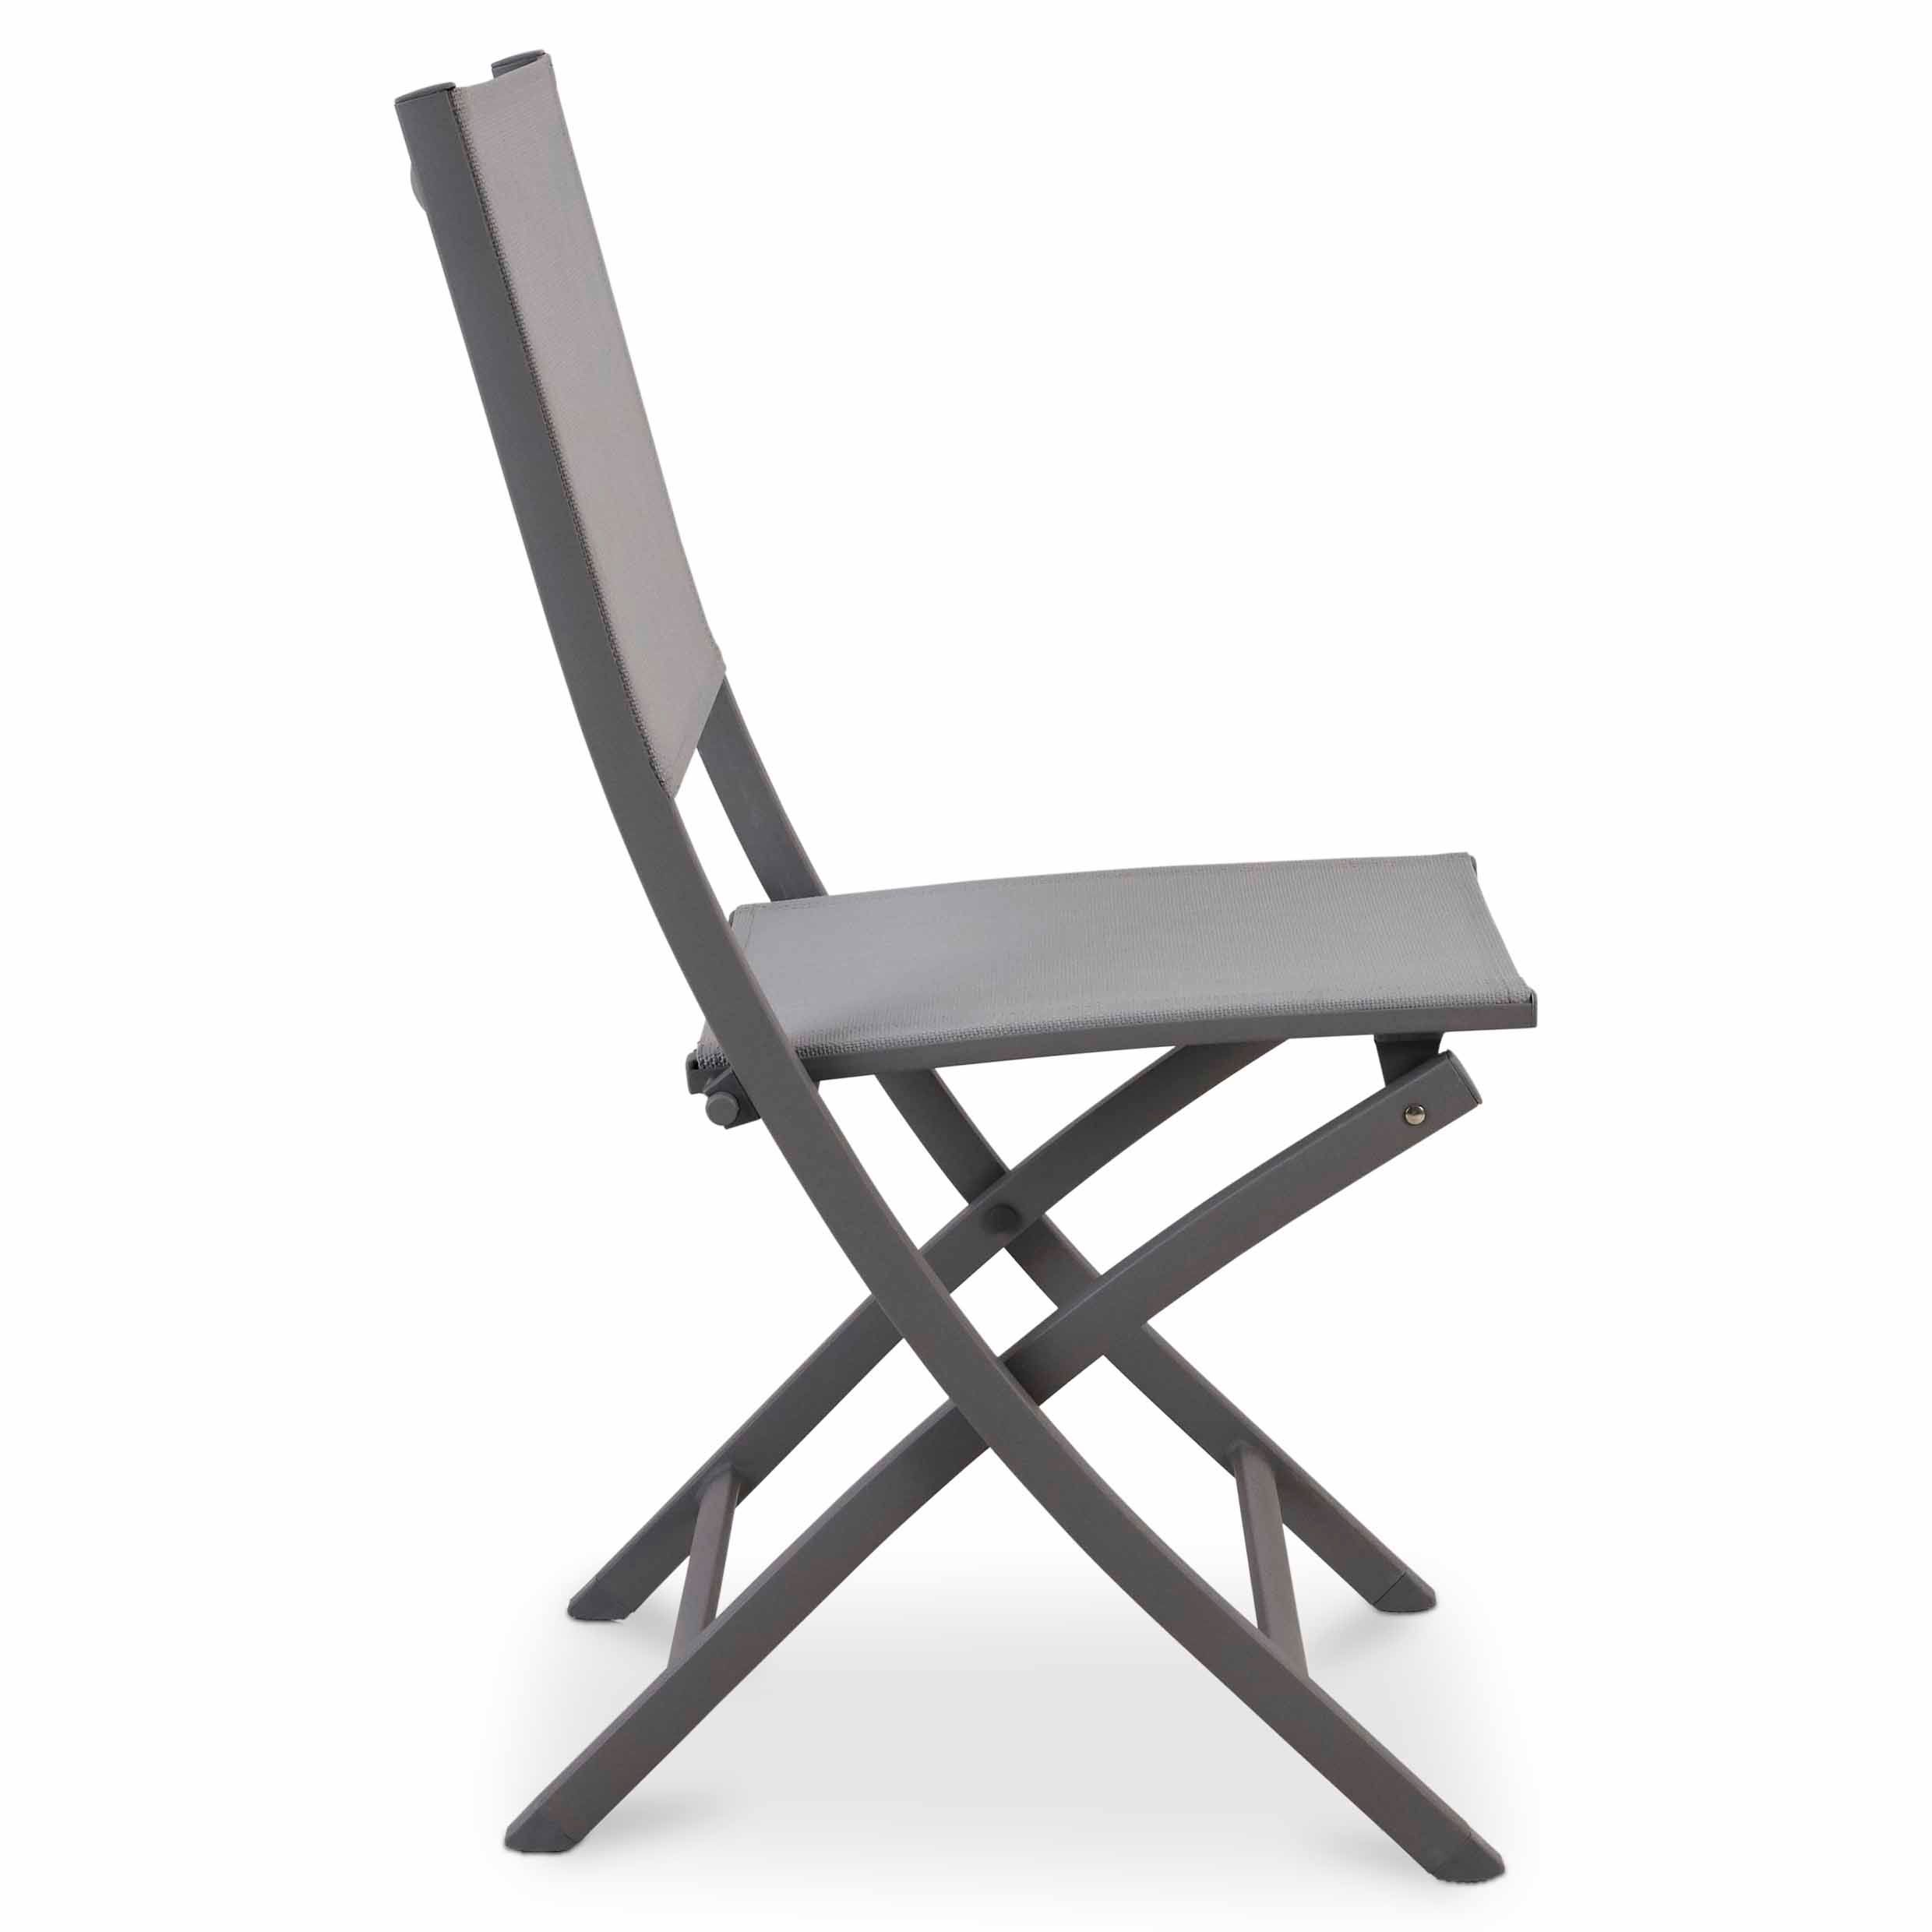 GoodHome Batang Grey Metal Foldable Chair